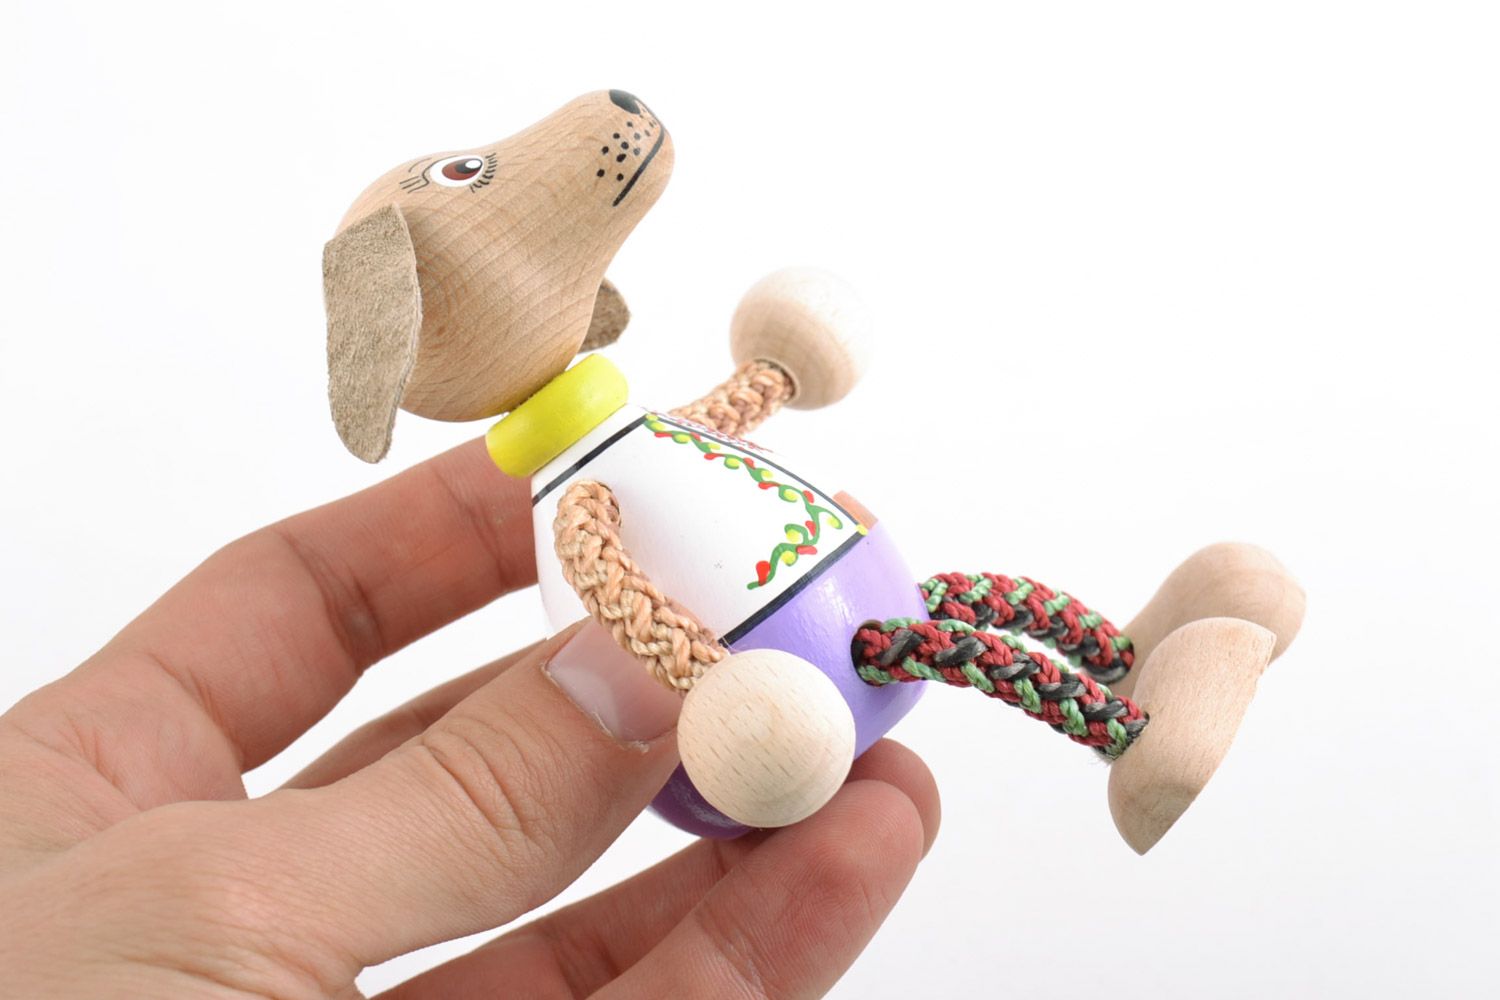 Оригинальная деревянная игрушка Собака ручной работы расписанная эко-красками фото 2